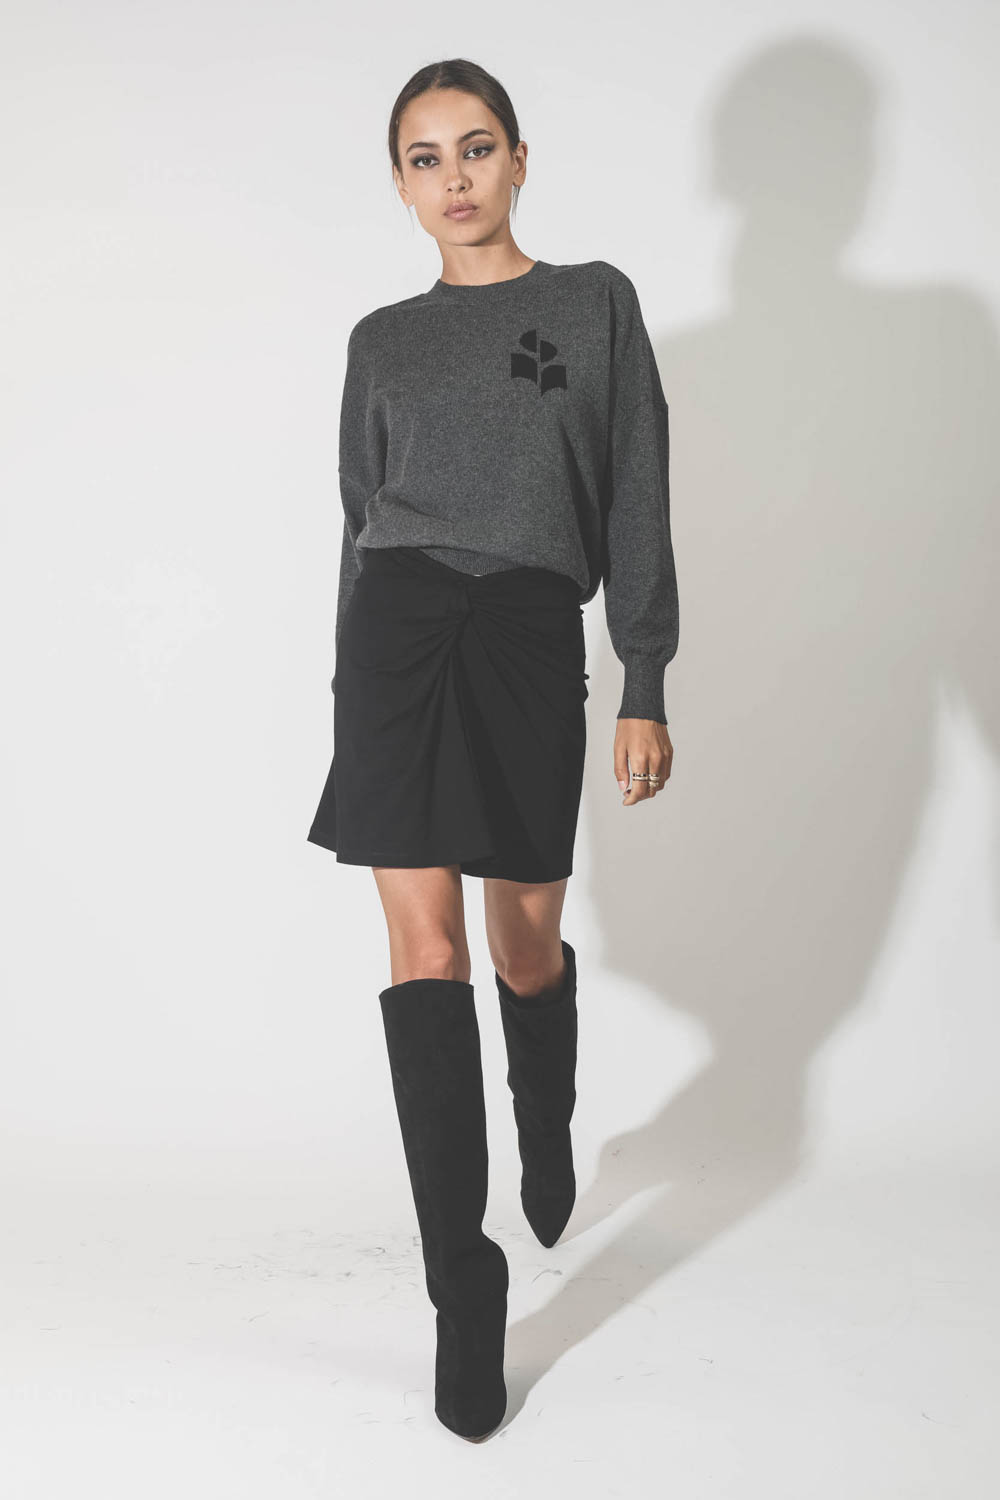 Pull col rond en coton laine gris anthracite avec logo noir Marisans Marant Etoile. Porté avec une jupe.